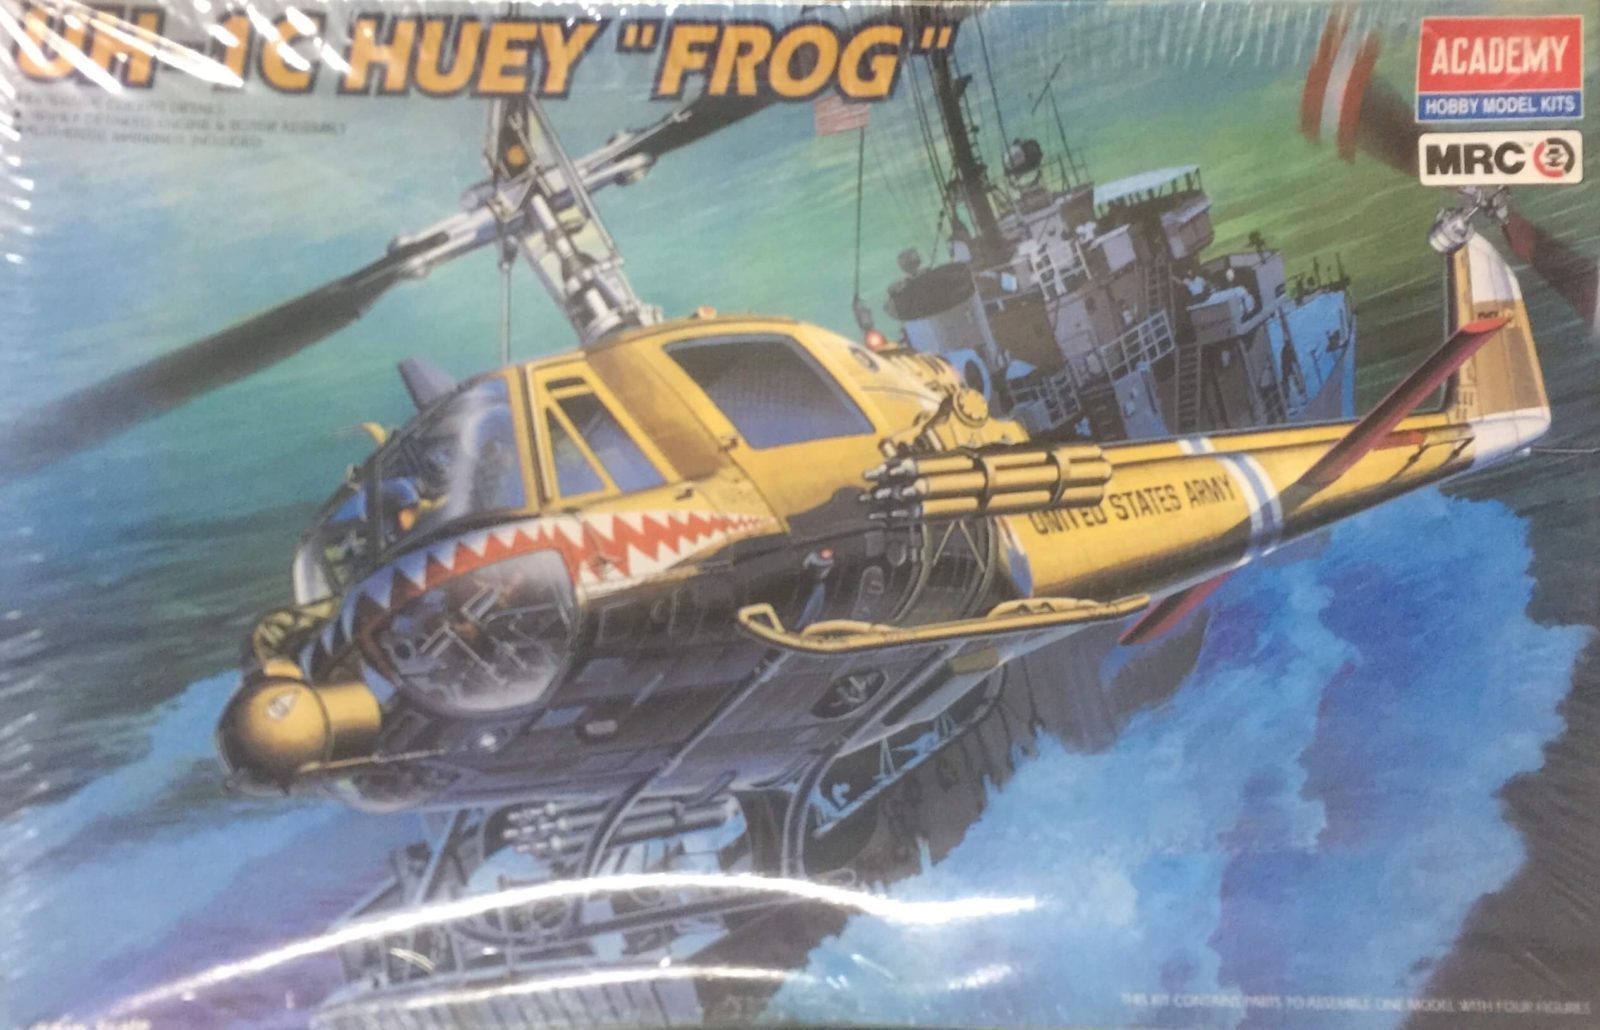 Academy UH-1C Huey Frog Ref 2196 Escala 1/35